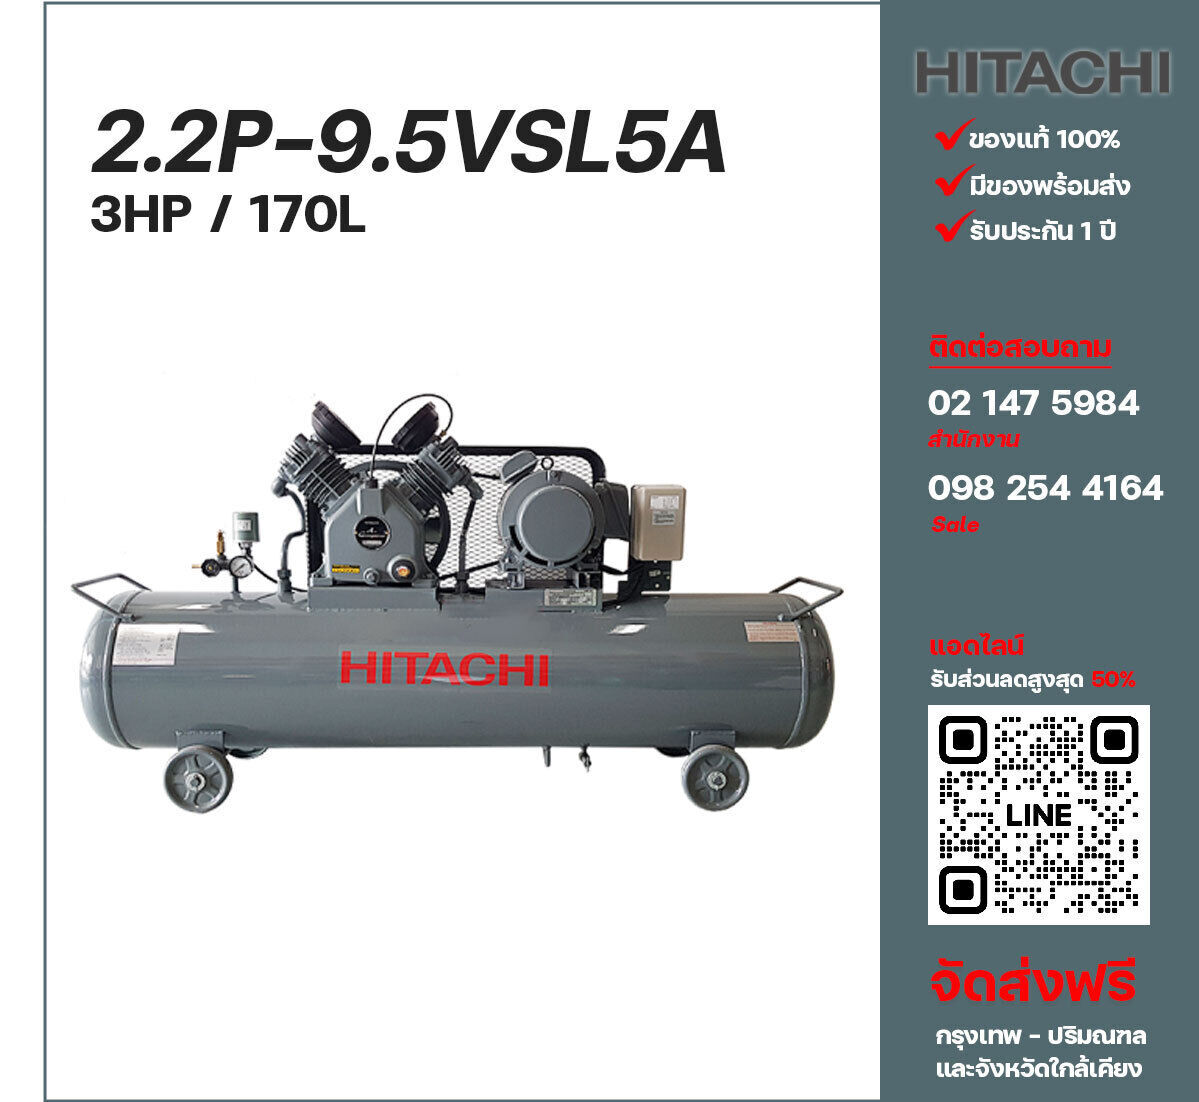 ปั๊มลมฮิตาชิ HITACHI รุ่นใช้น้ำมัน 2.2P-9.5VLS5A220V ปั๊มลมลูกสูบ ขนาด 2 สูบ 3 แรงม้า 170 ลิตร Hitachi พร้อมมอเตอร์ Hitachi ไฟ 220V ส่งฟรี กรุงเทพฯ-ปริมณฑล รับประกัน 1 ปี